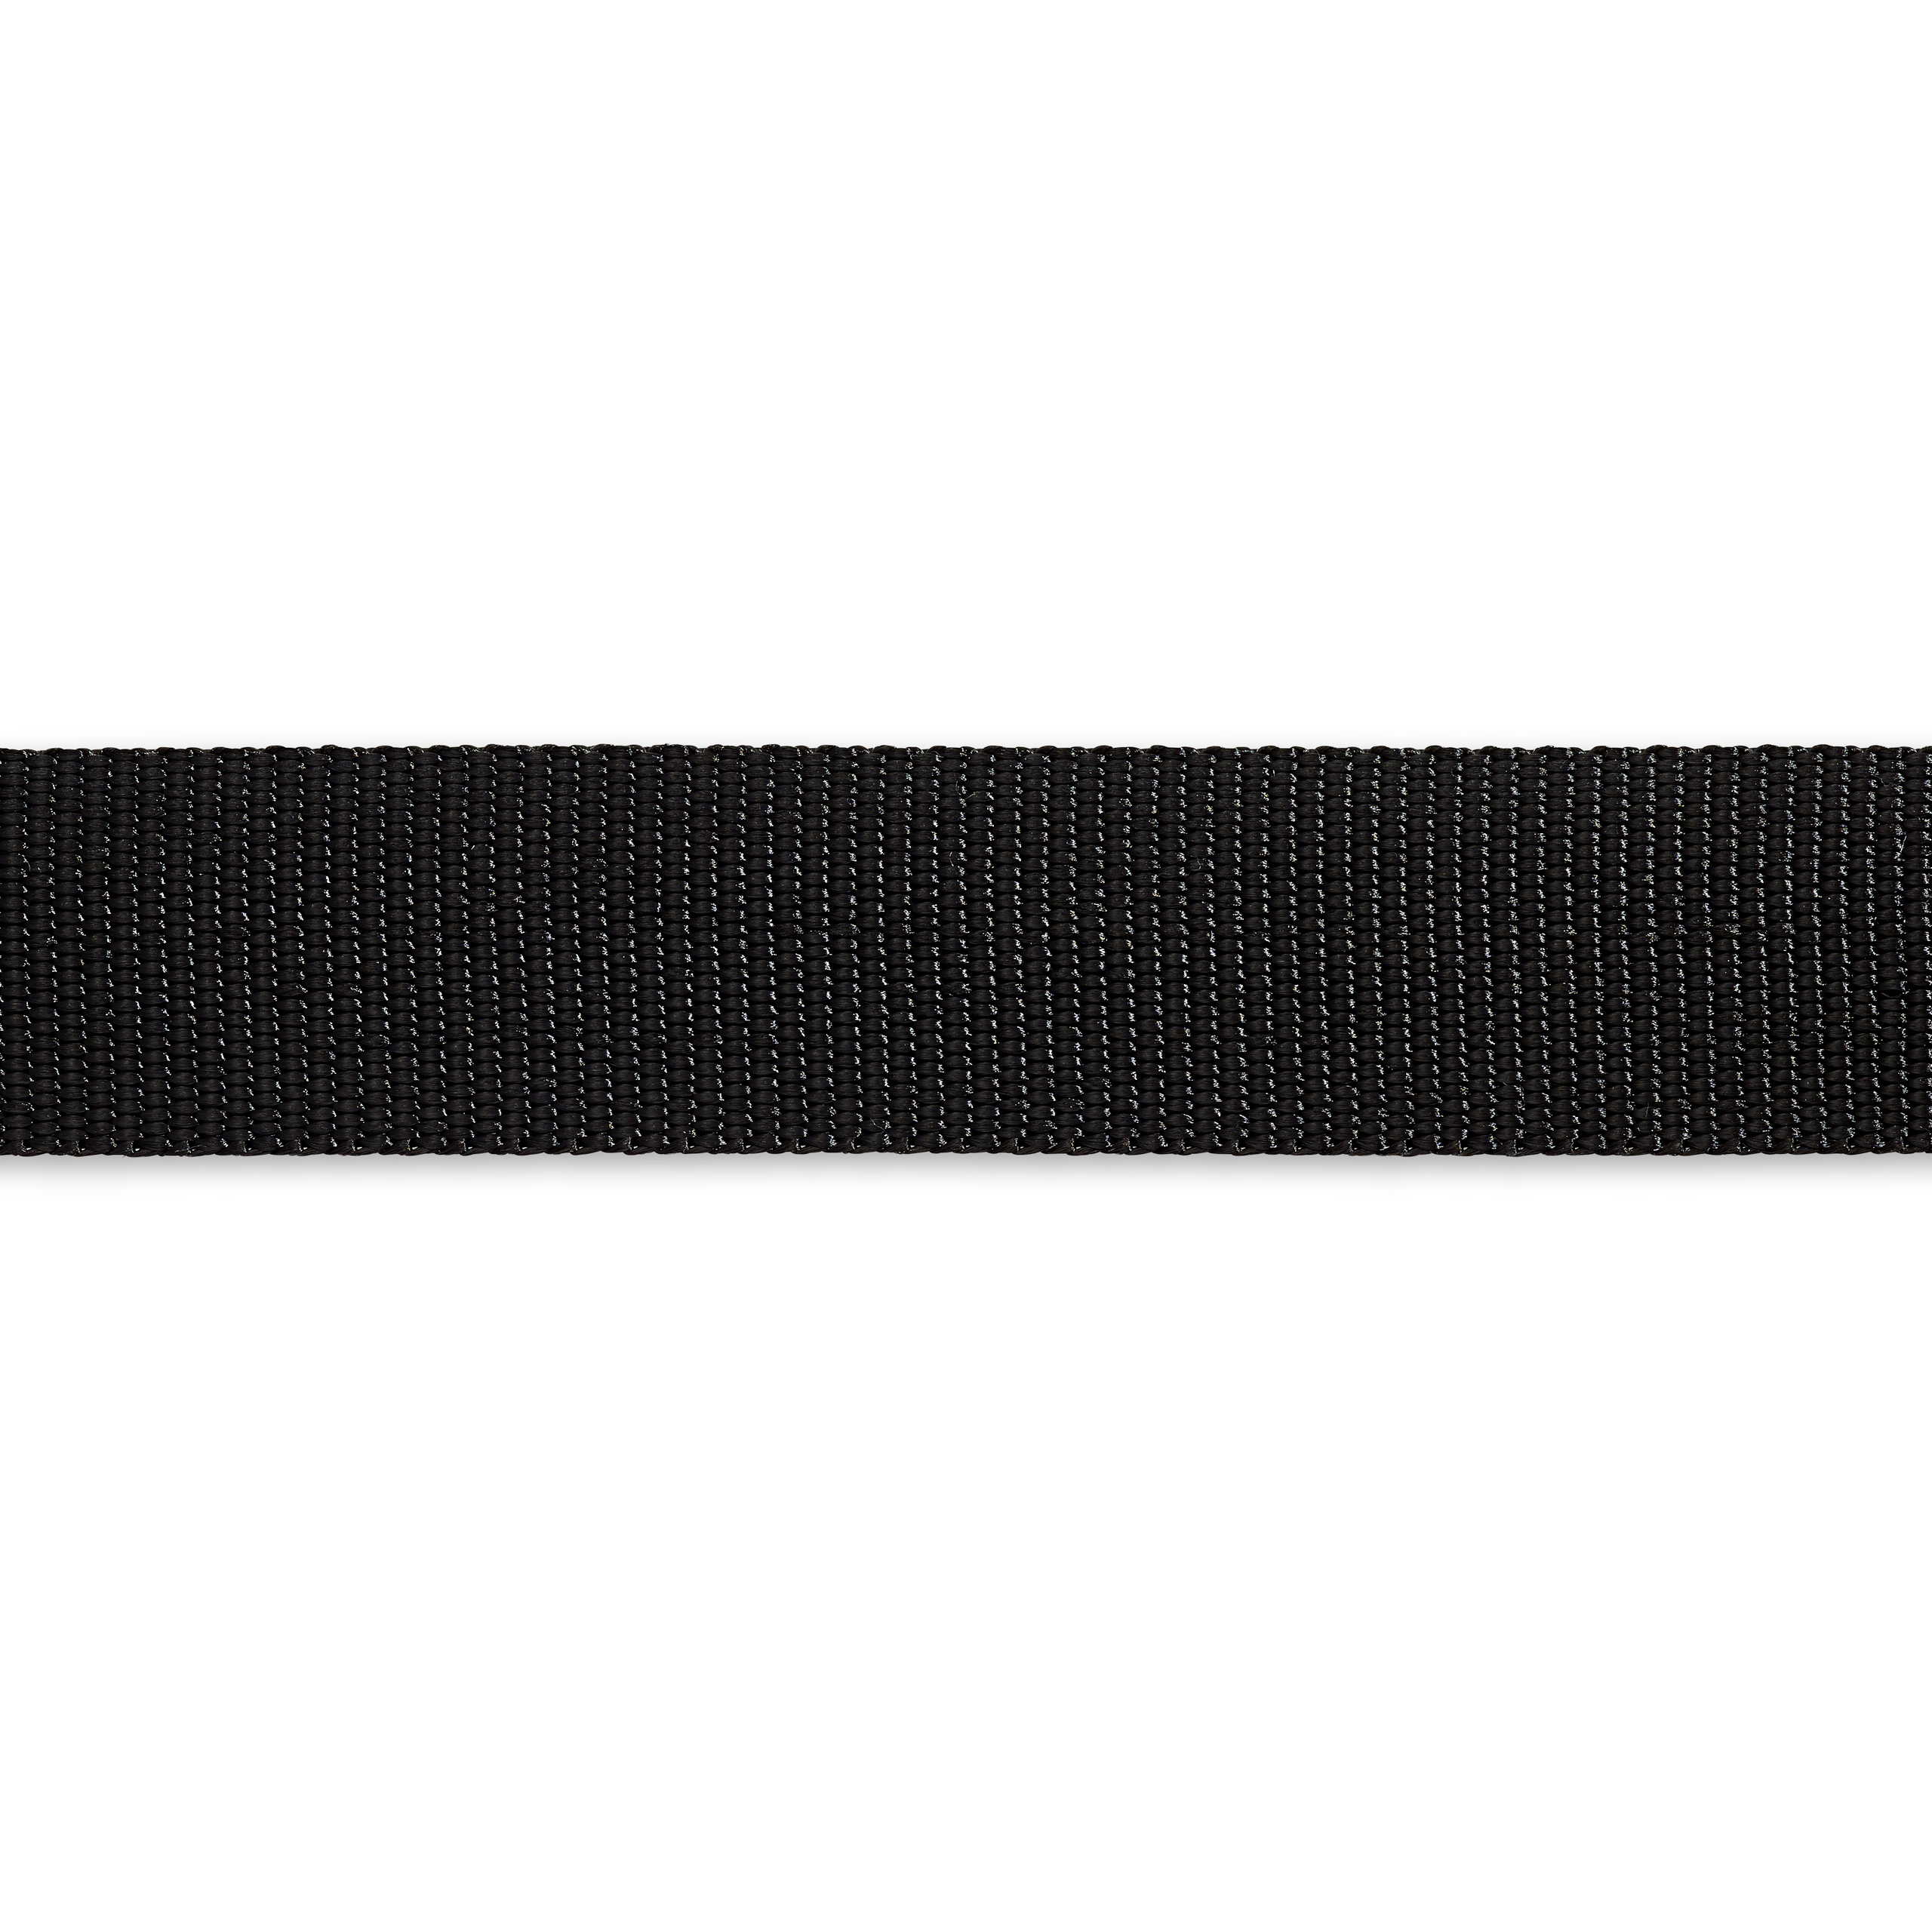 Gurtband für Rucksäcke 30 mm schwarz, Meterware